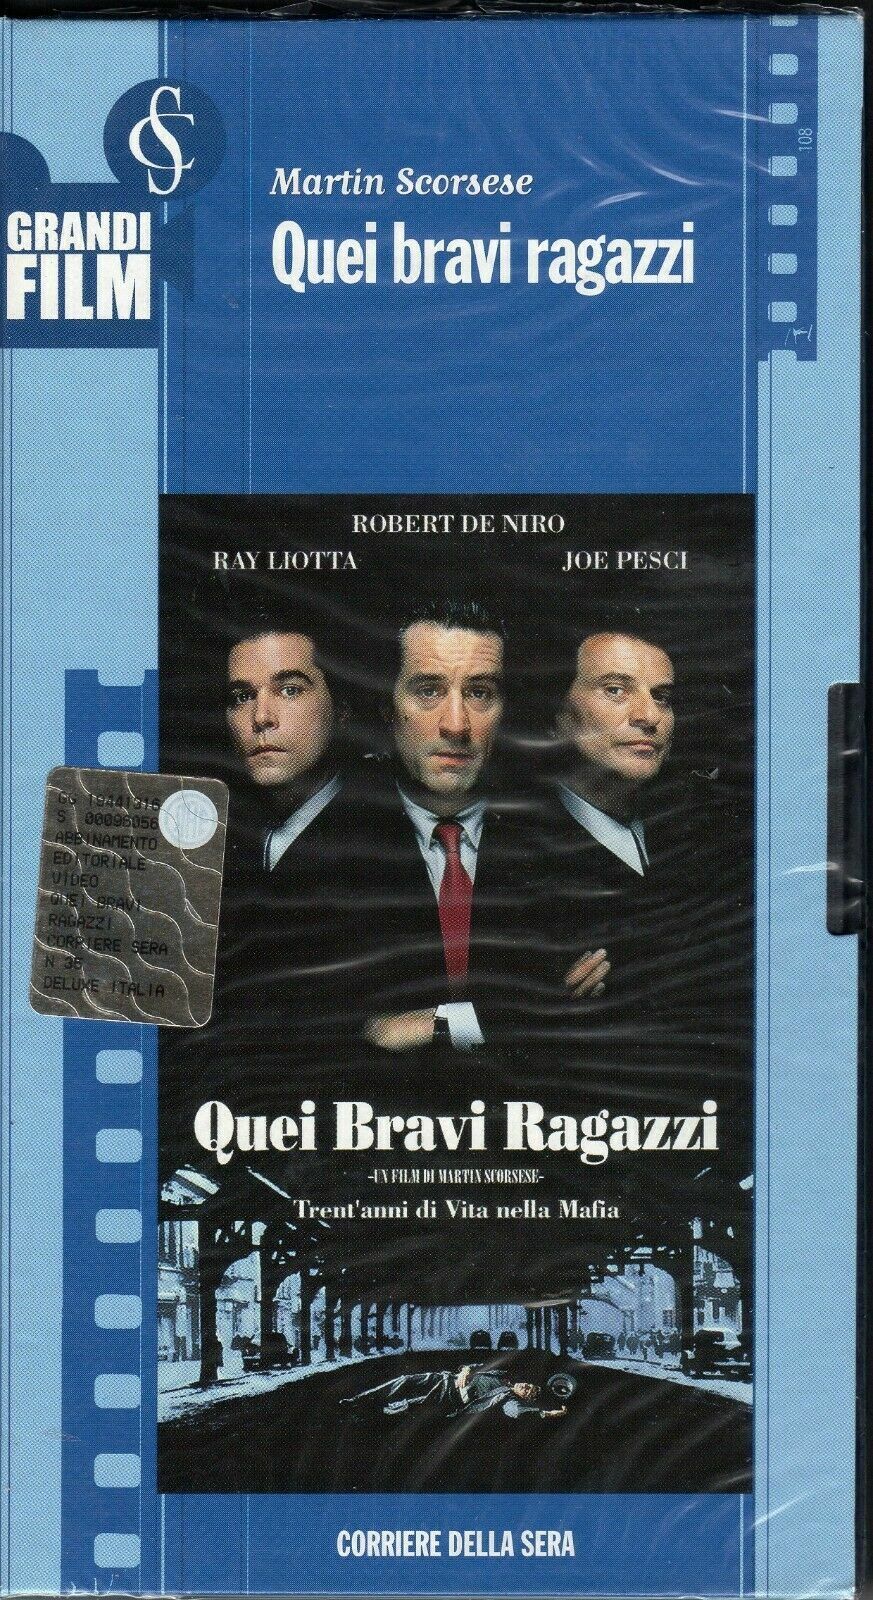 Quei bravi ragazzi -1990- VHS Video editoriale Corsera- F